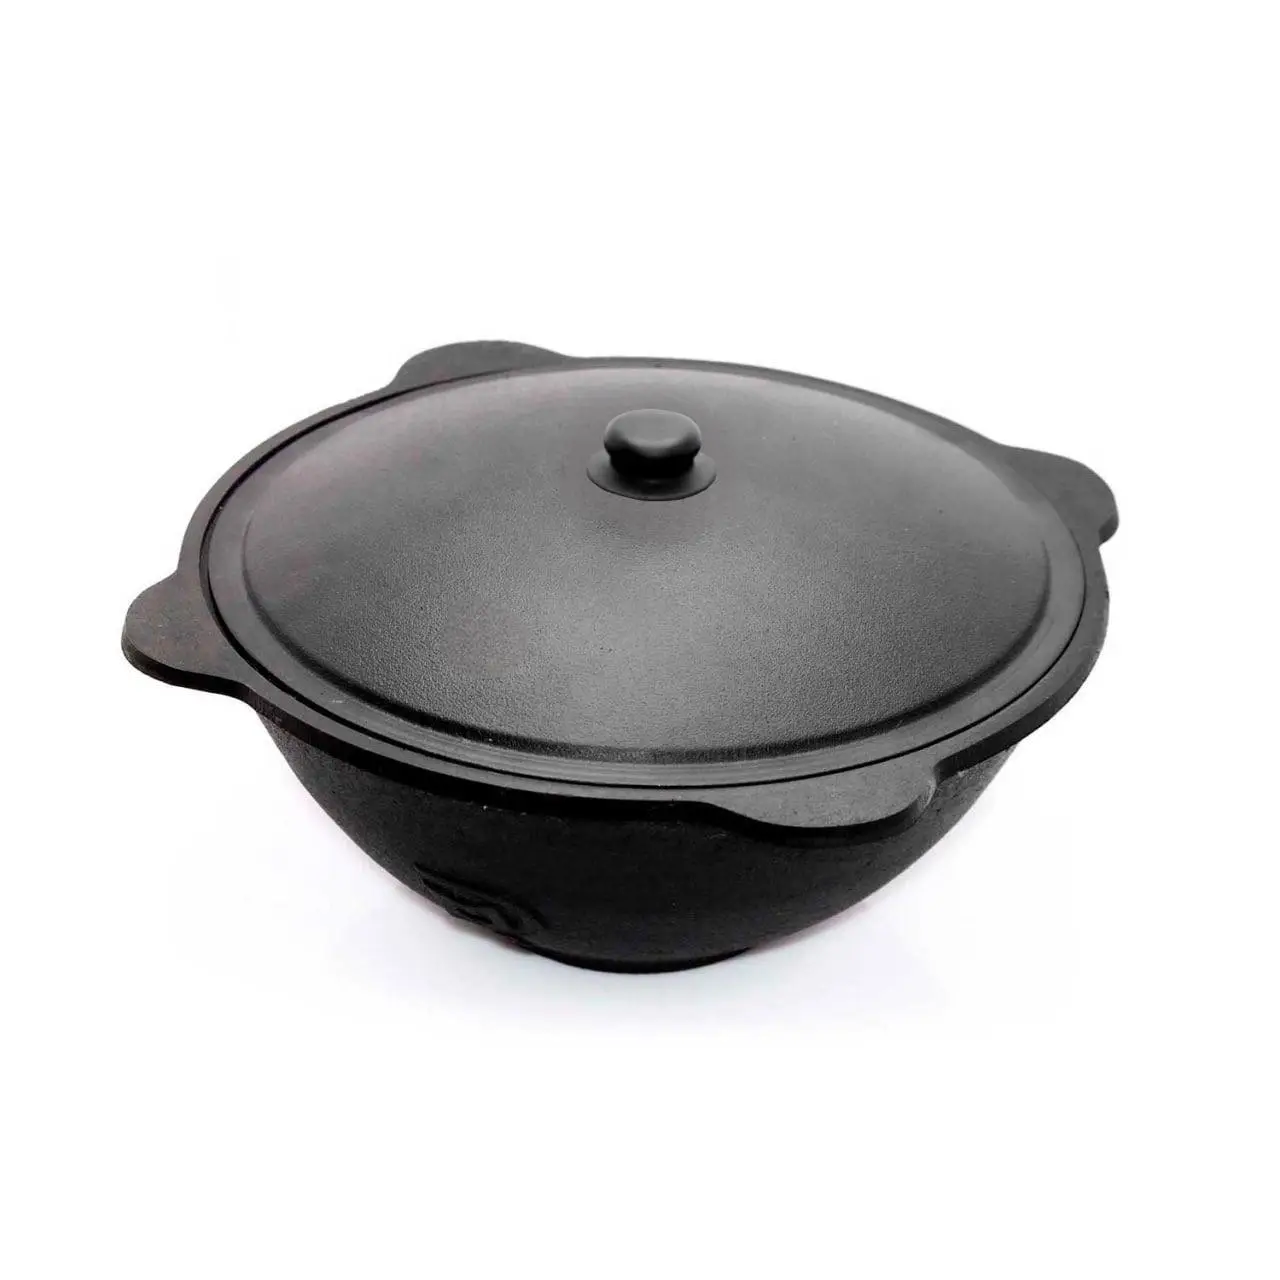 Cauldron - 10L - Dutch Oven Pot with Lid 10 L (10.5 Quarts) - Cast Iron Dutch Oven - Uzbek Kazan Cast Iron - Cast Iron Cookware Set – Premium Camping Cookware